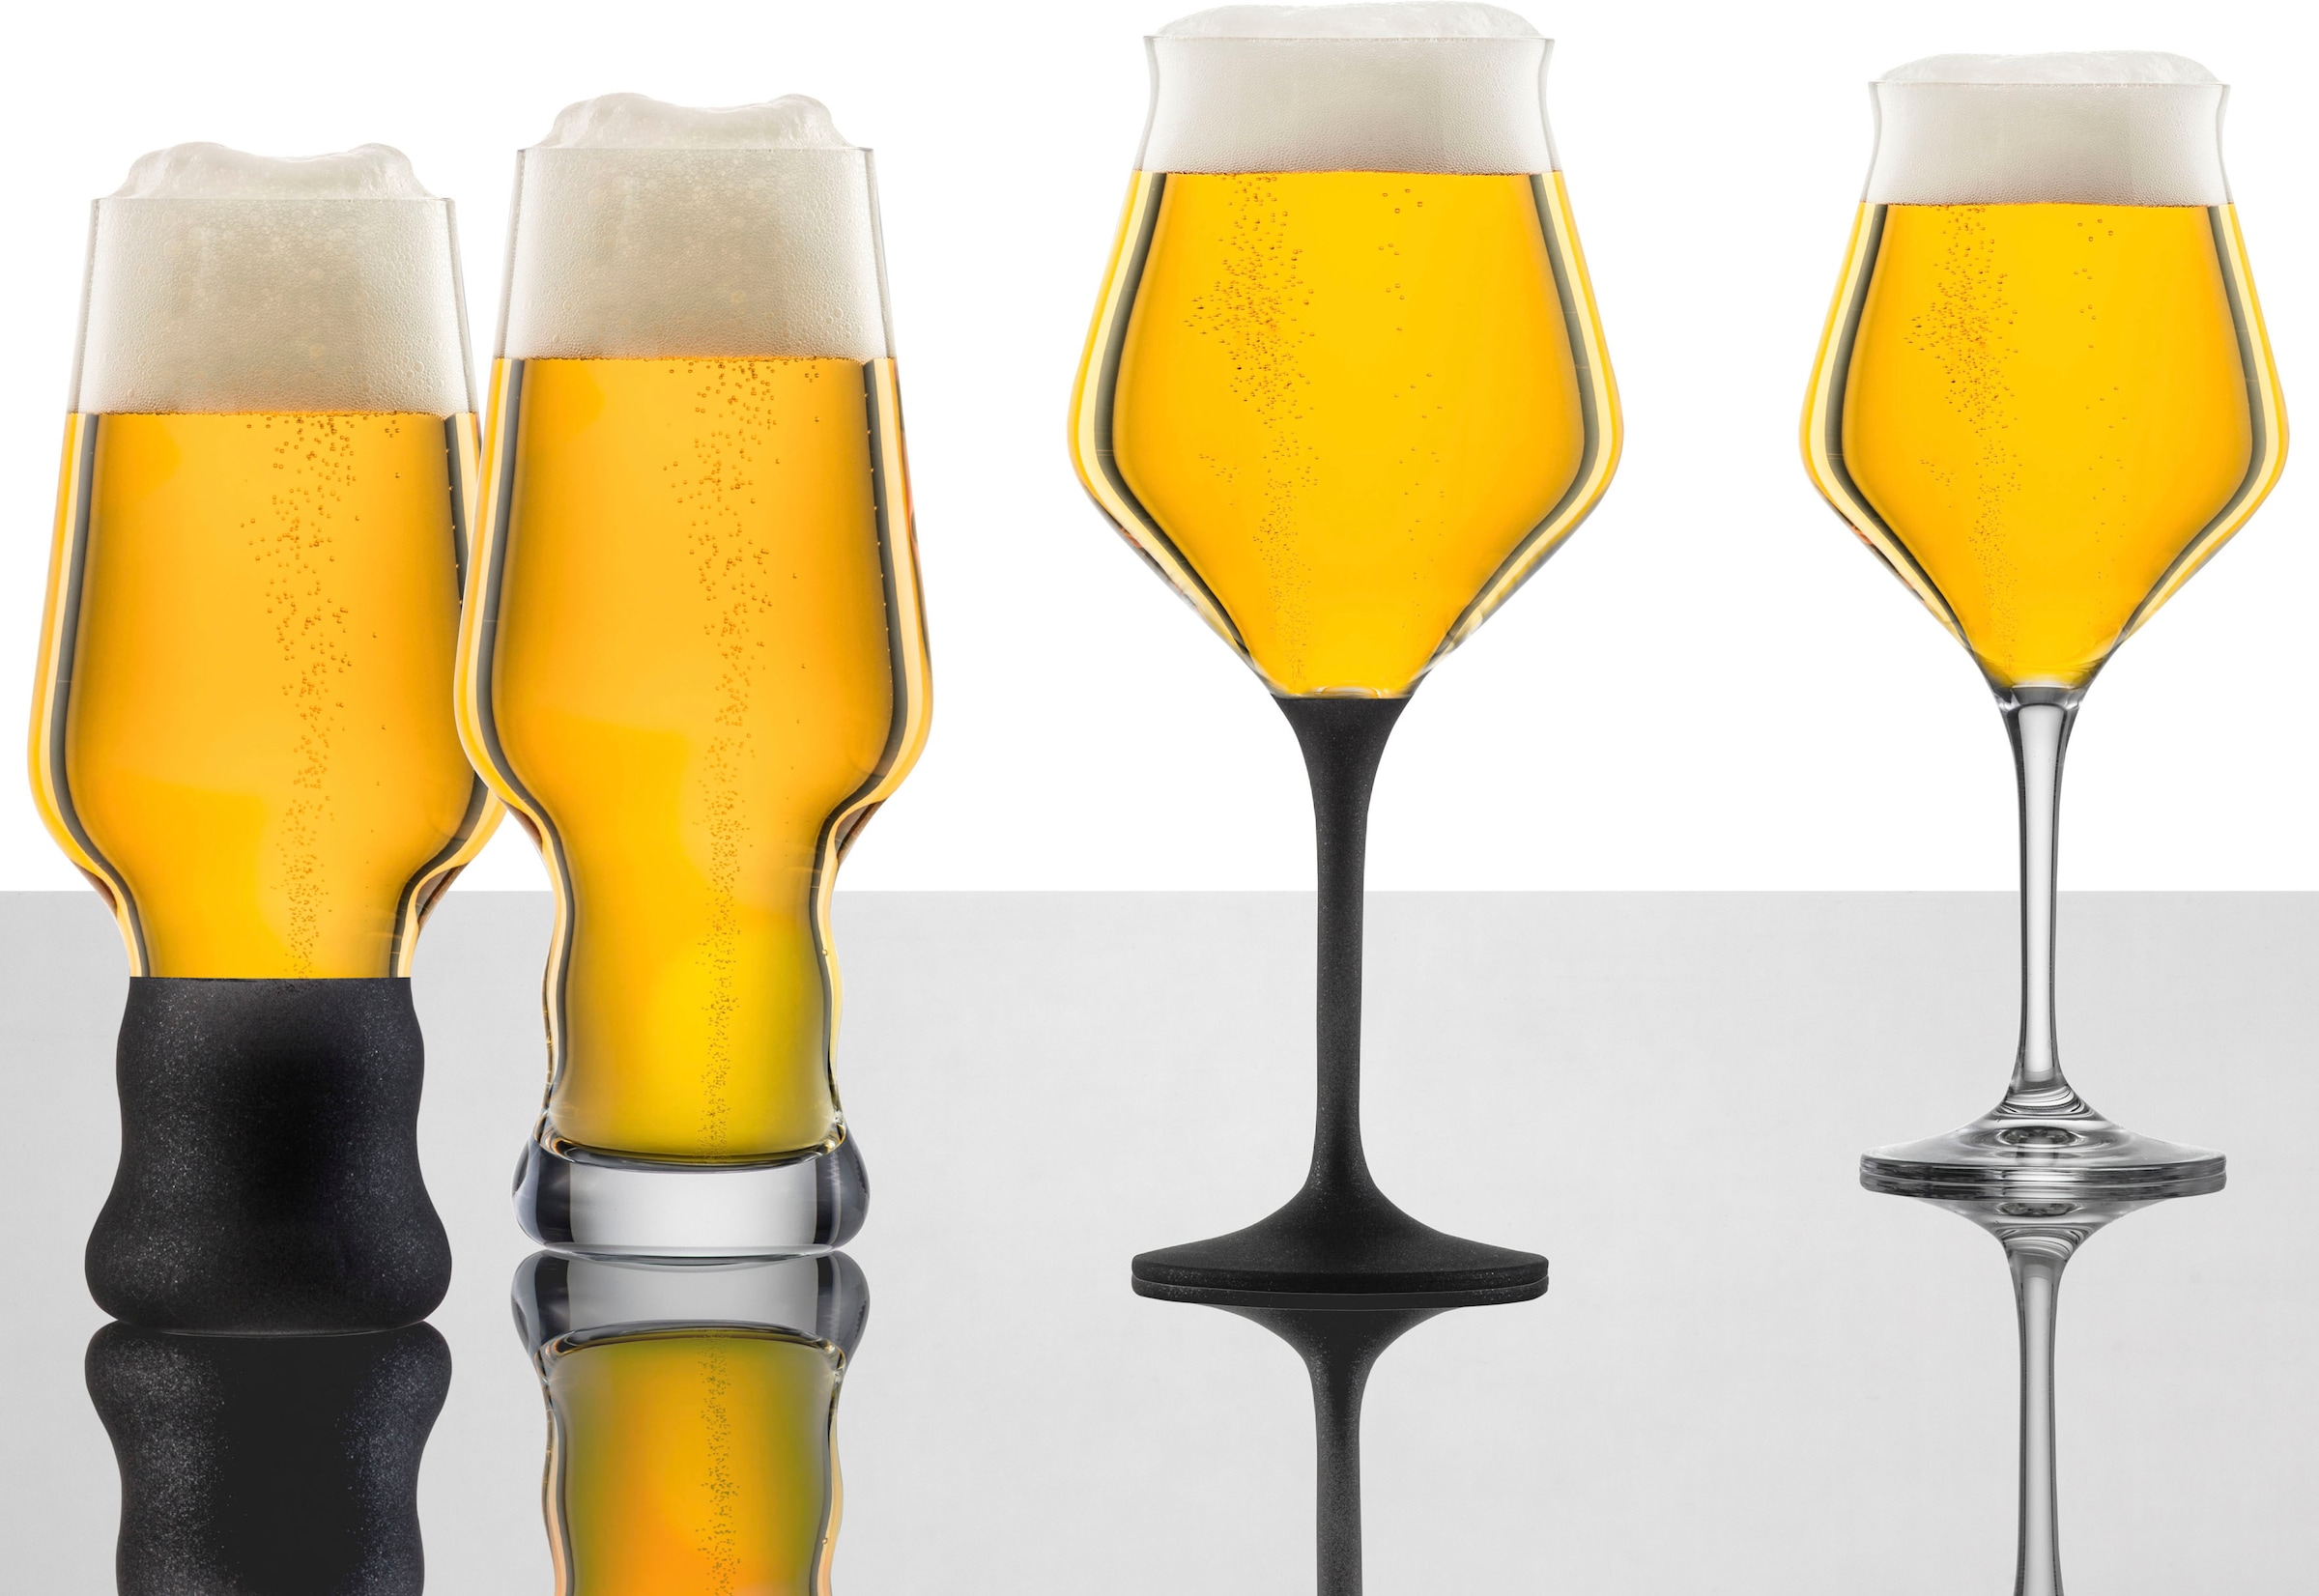 Eisch Bierglas »CRAFT BEER EXPERTS«, (Set, 2 tlg., 2 Craft Beer Gläser in Geschenkröhre), 2-teilig, 435 ml